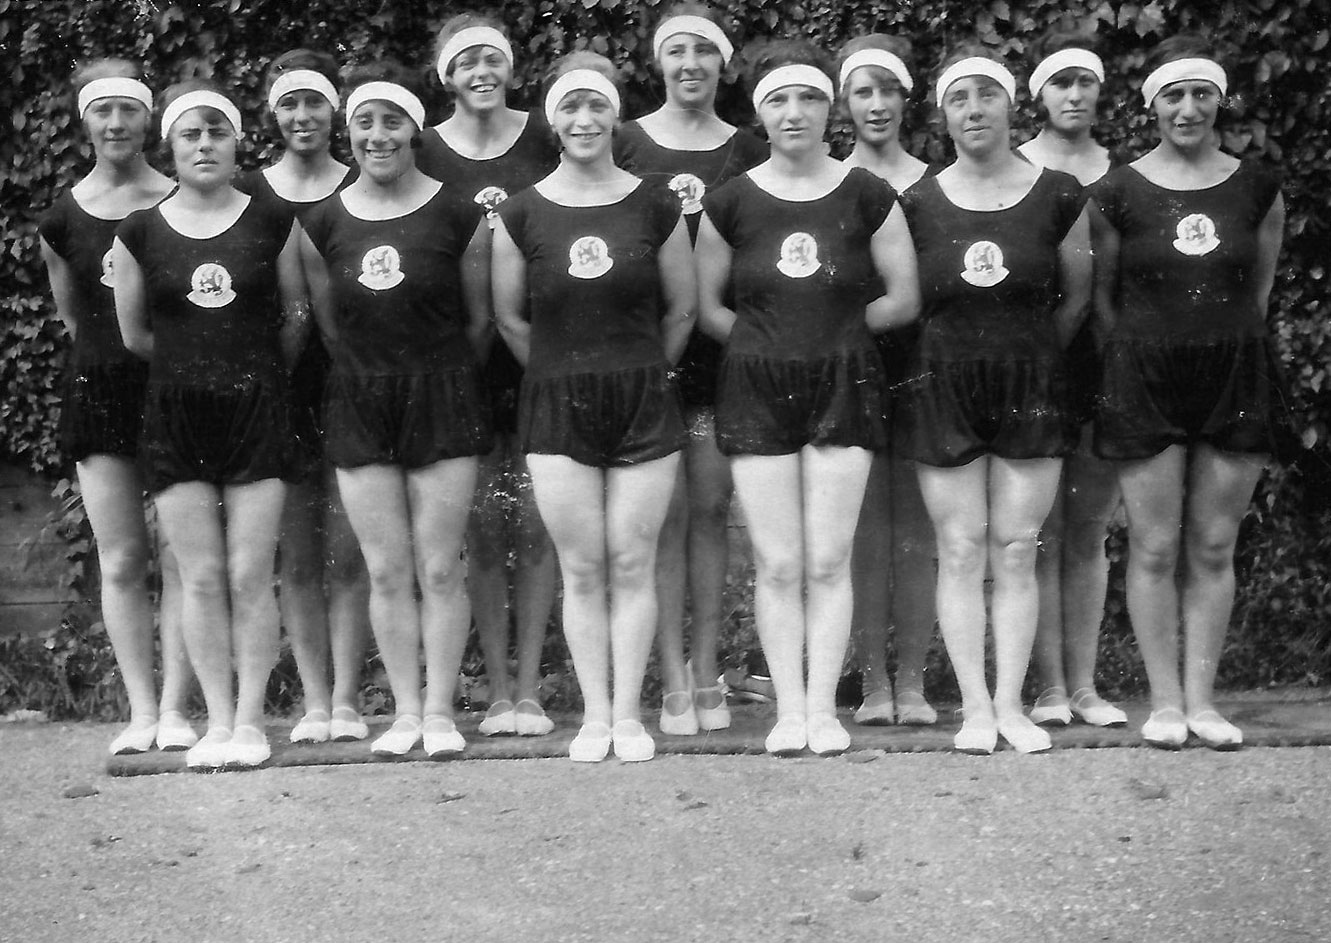 נבחרת הנשים האולימפית של הולנד בהתעמלות באולימפיאדת אמסטרדם, 1928. הנבחרת זכתה במדליית זהב קבוצתית. מאמן הנבחרת היה יהודי, וחמש מהמתעמלות בנבחרת היו יהודיות